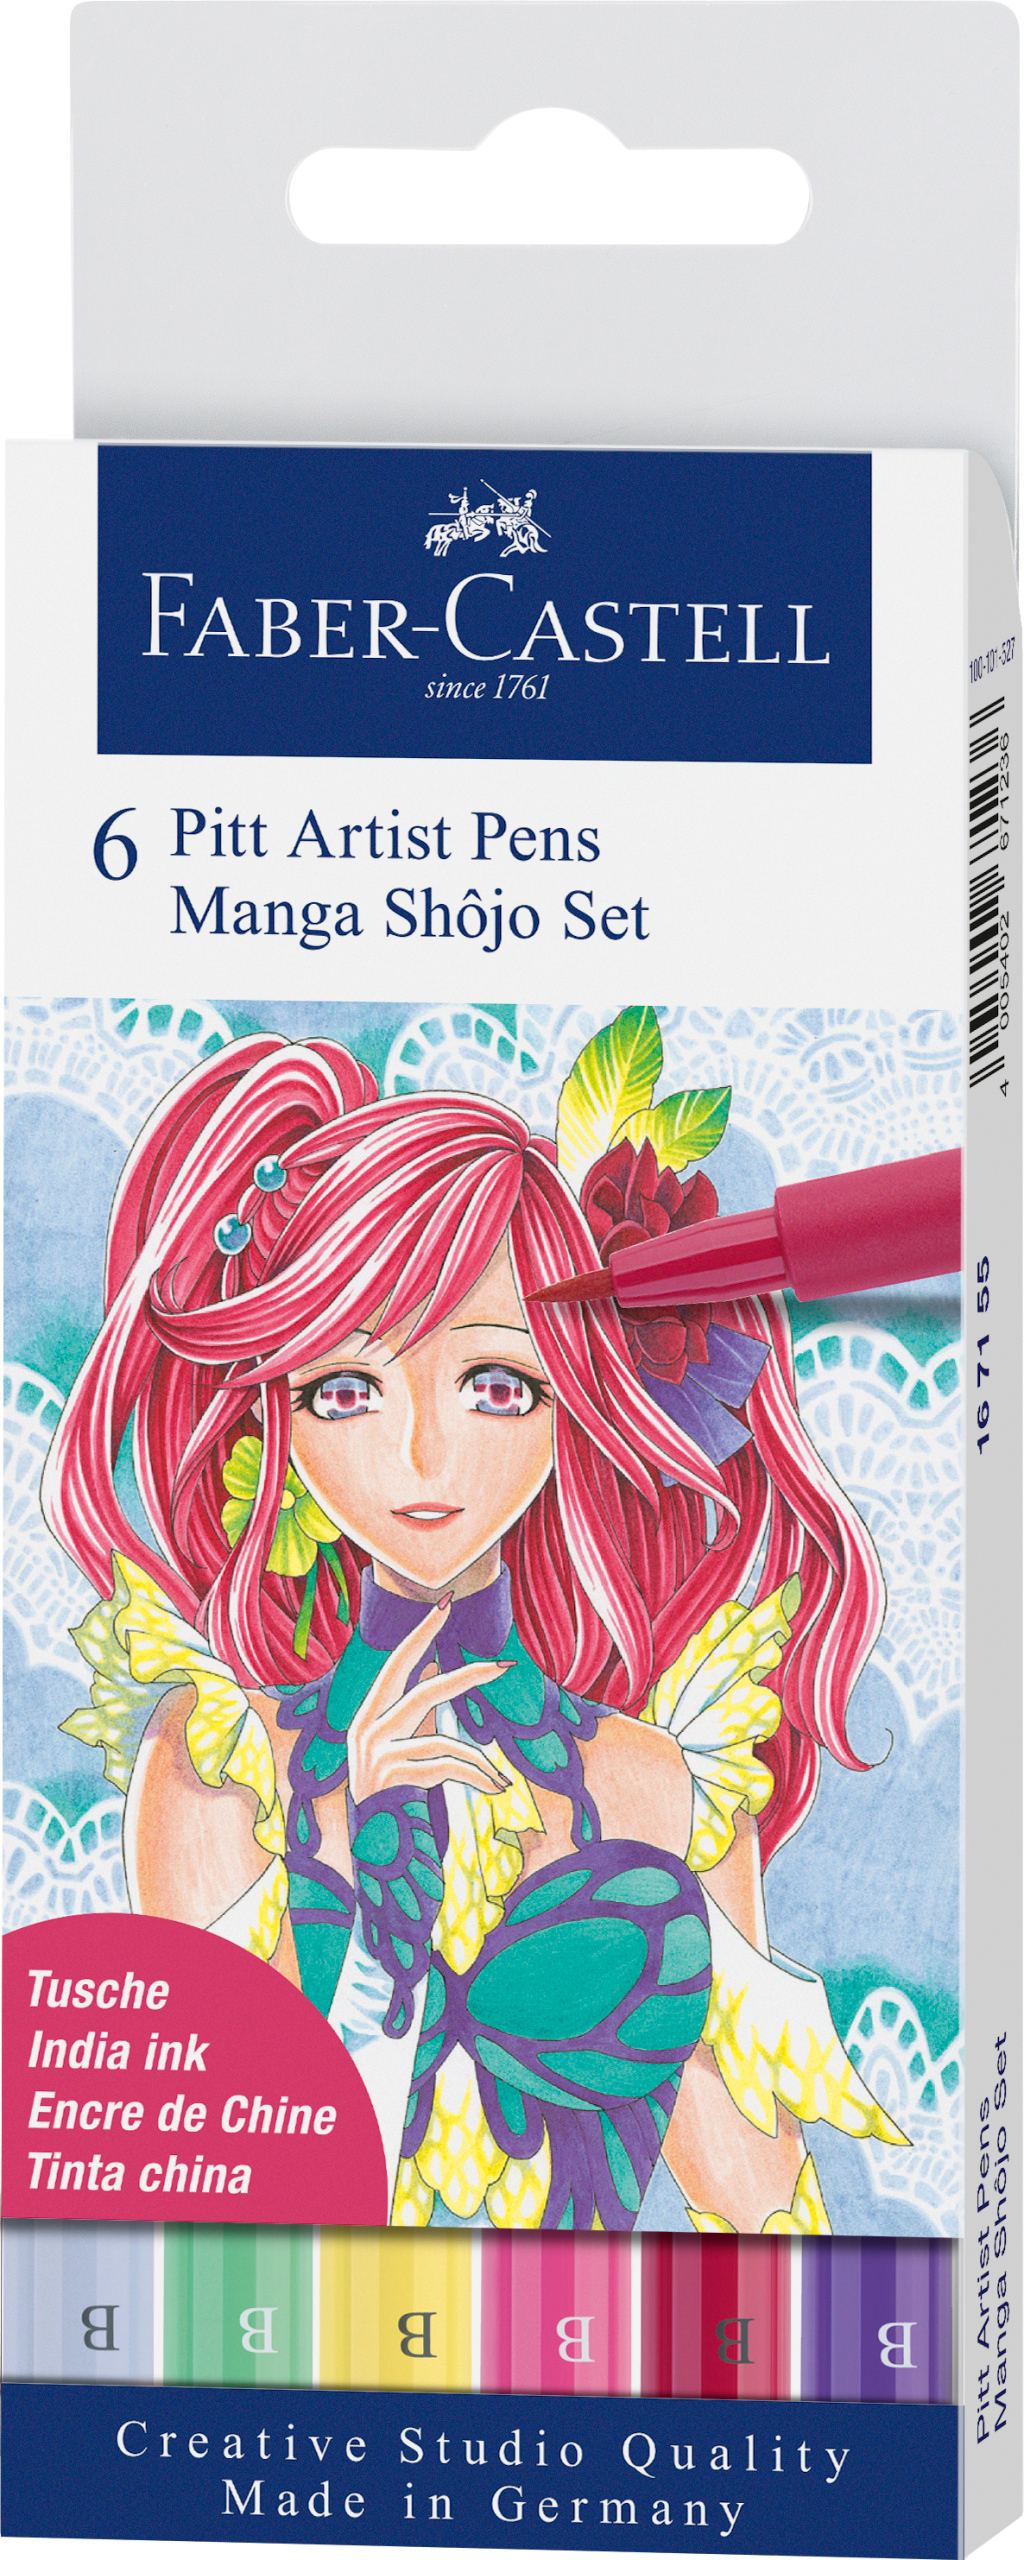 FABER-CASTELL Pitt Artist Pen Manga Shôjo 167155 couleurs 6 pcs.